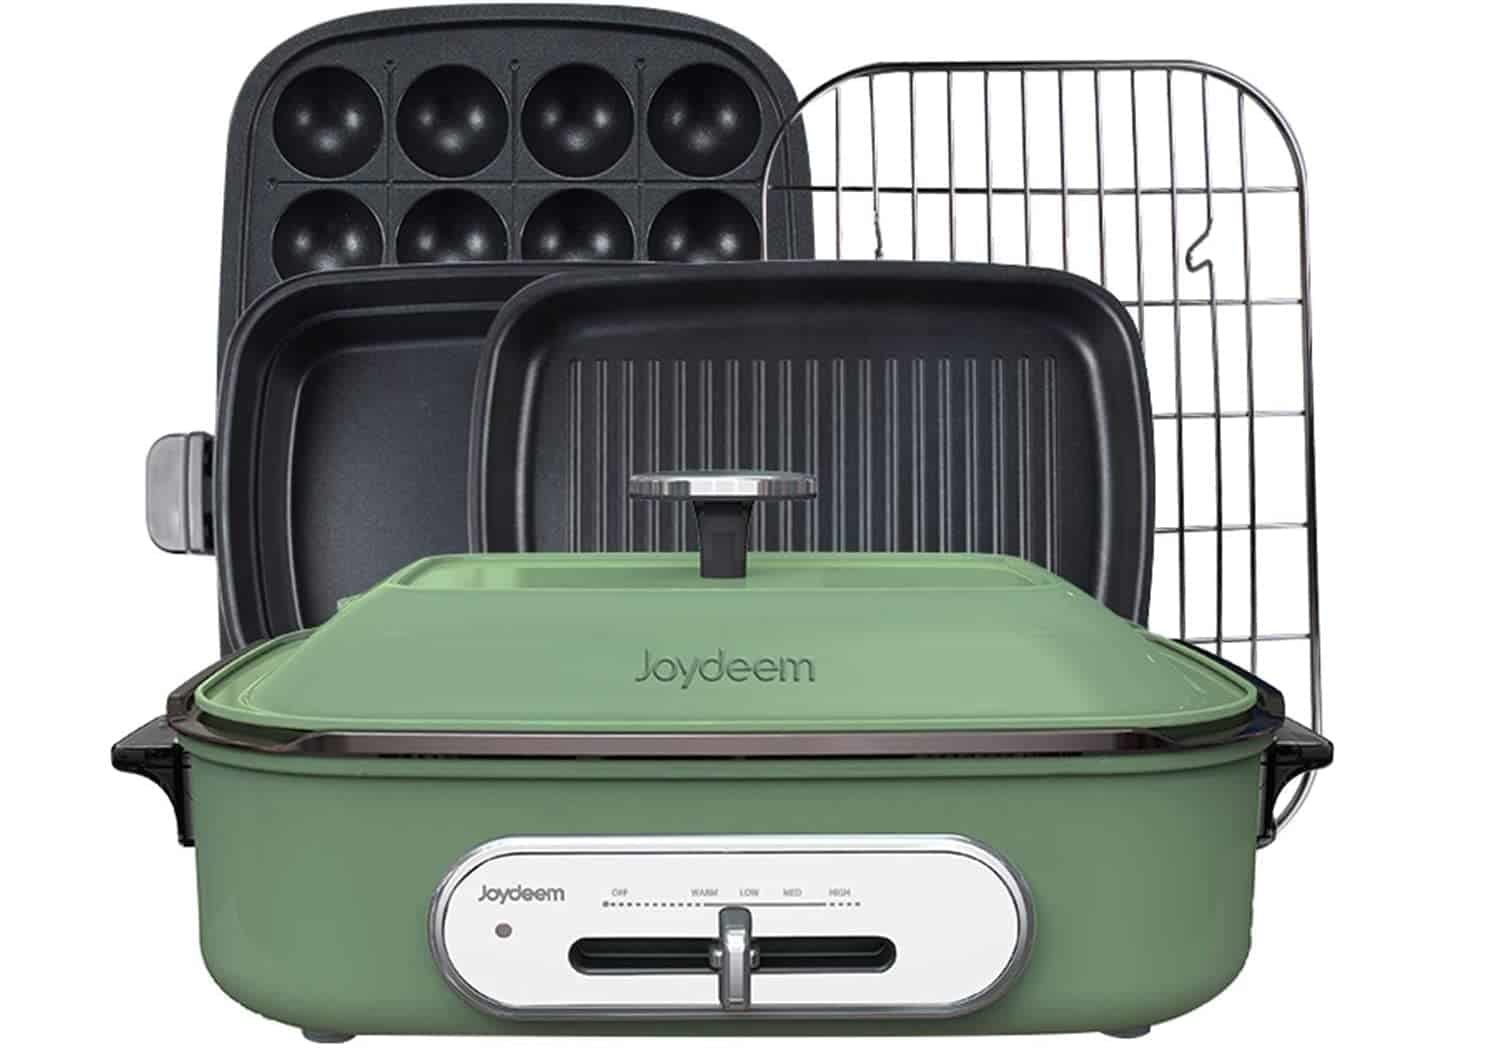 เครื่องอบทาโกะยากิอเนกประสงค์ที่ดีที่สุด: Joydeem Compact Hot Plate